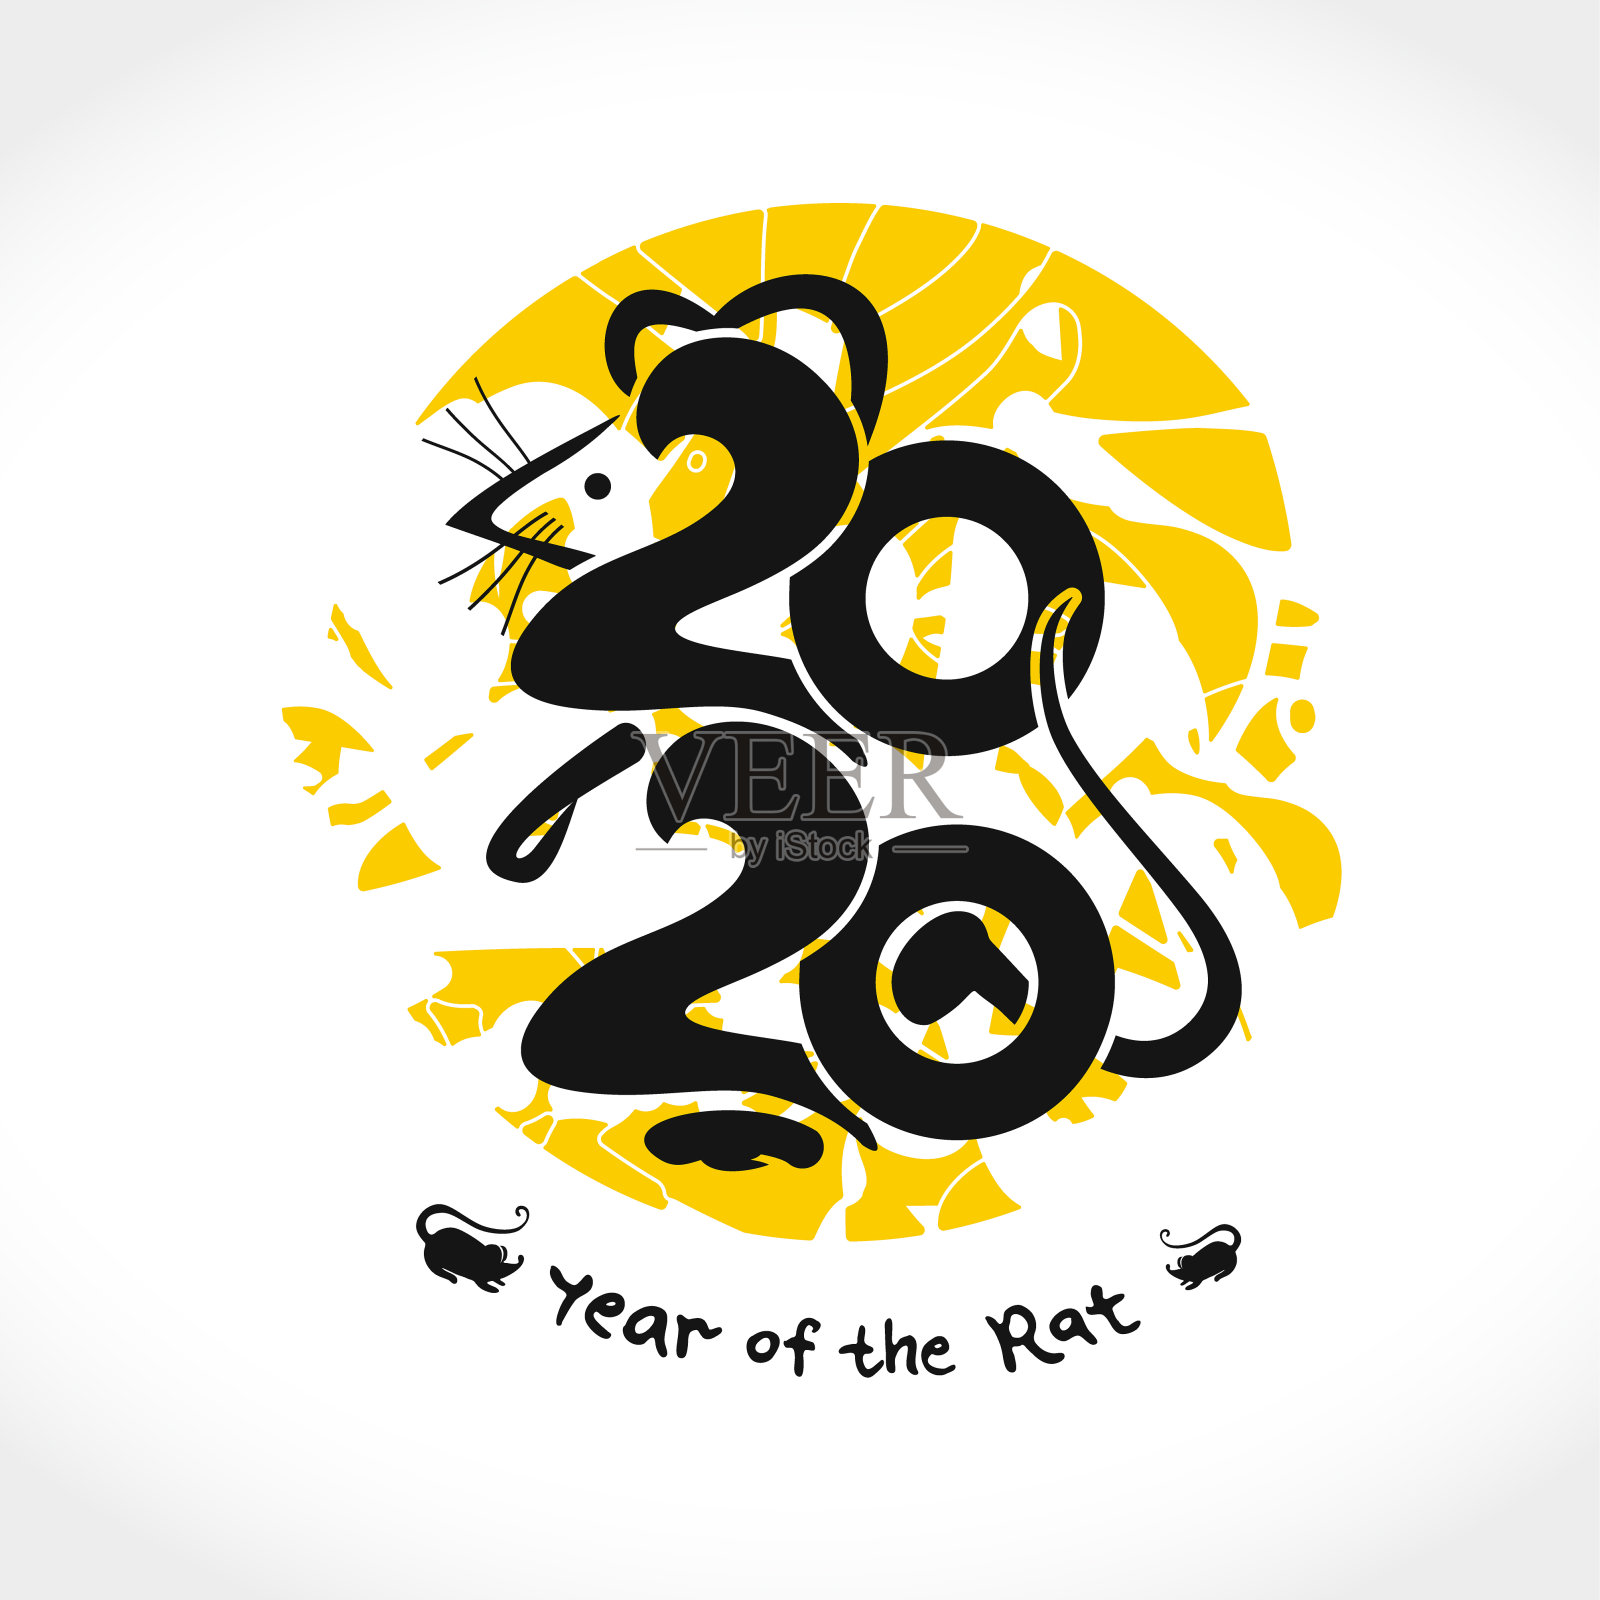 2020年鼠。鼠2020手写标志，背景为黄色圆形邮票。插画图片素材